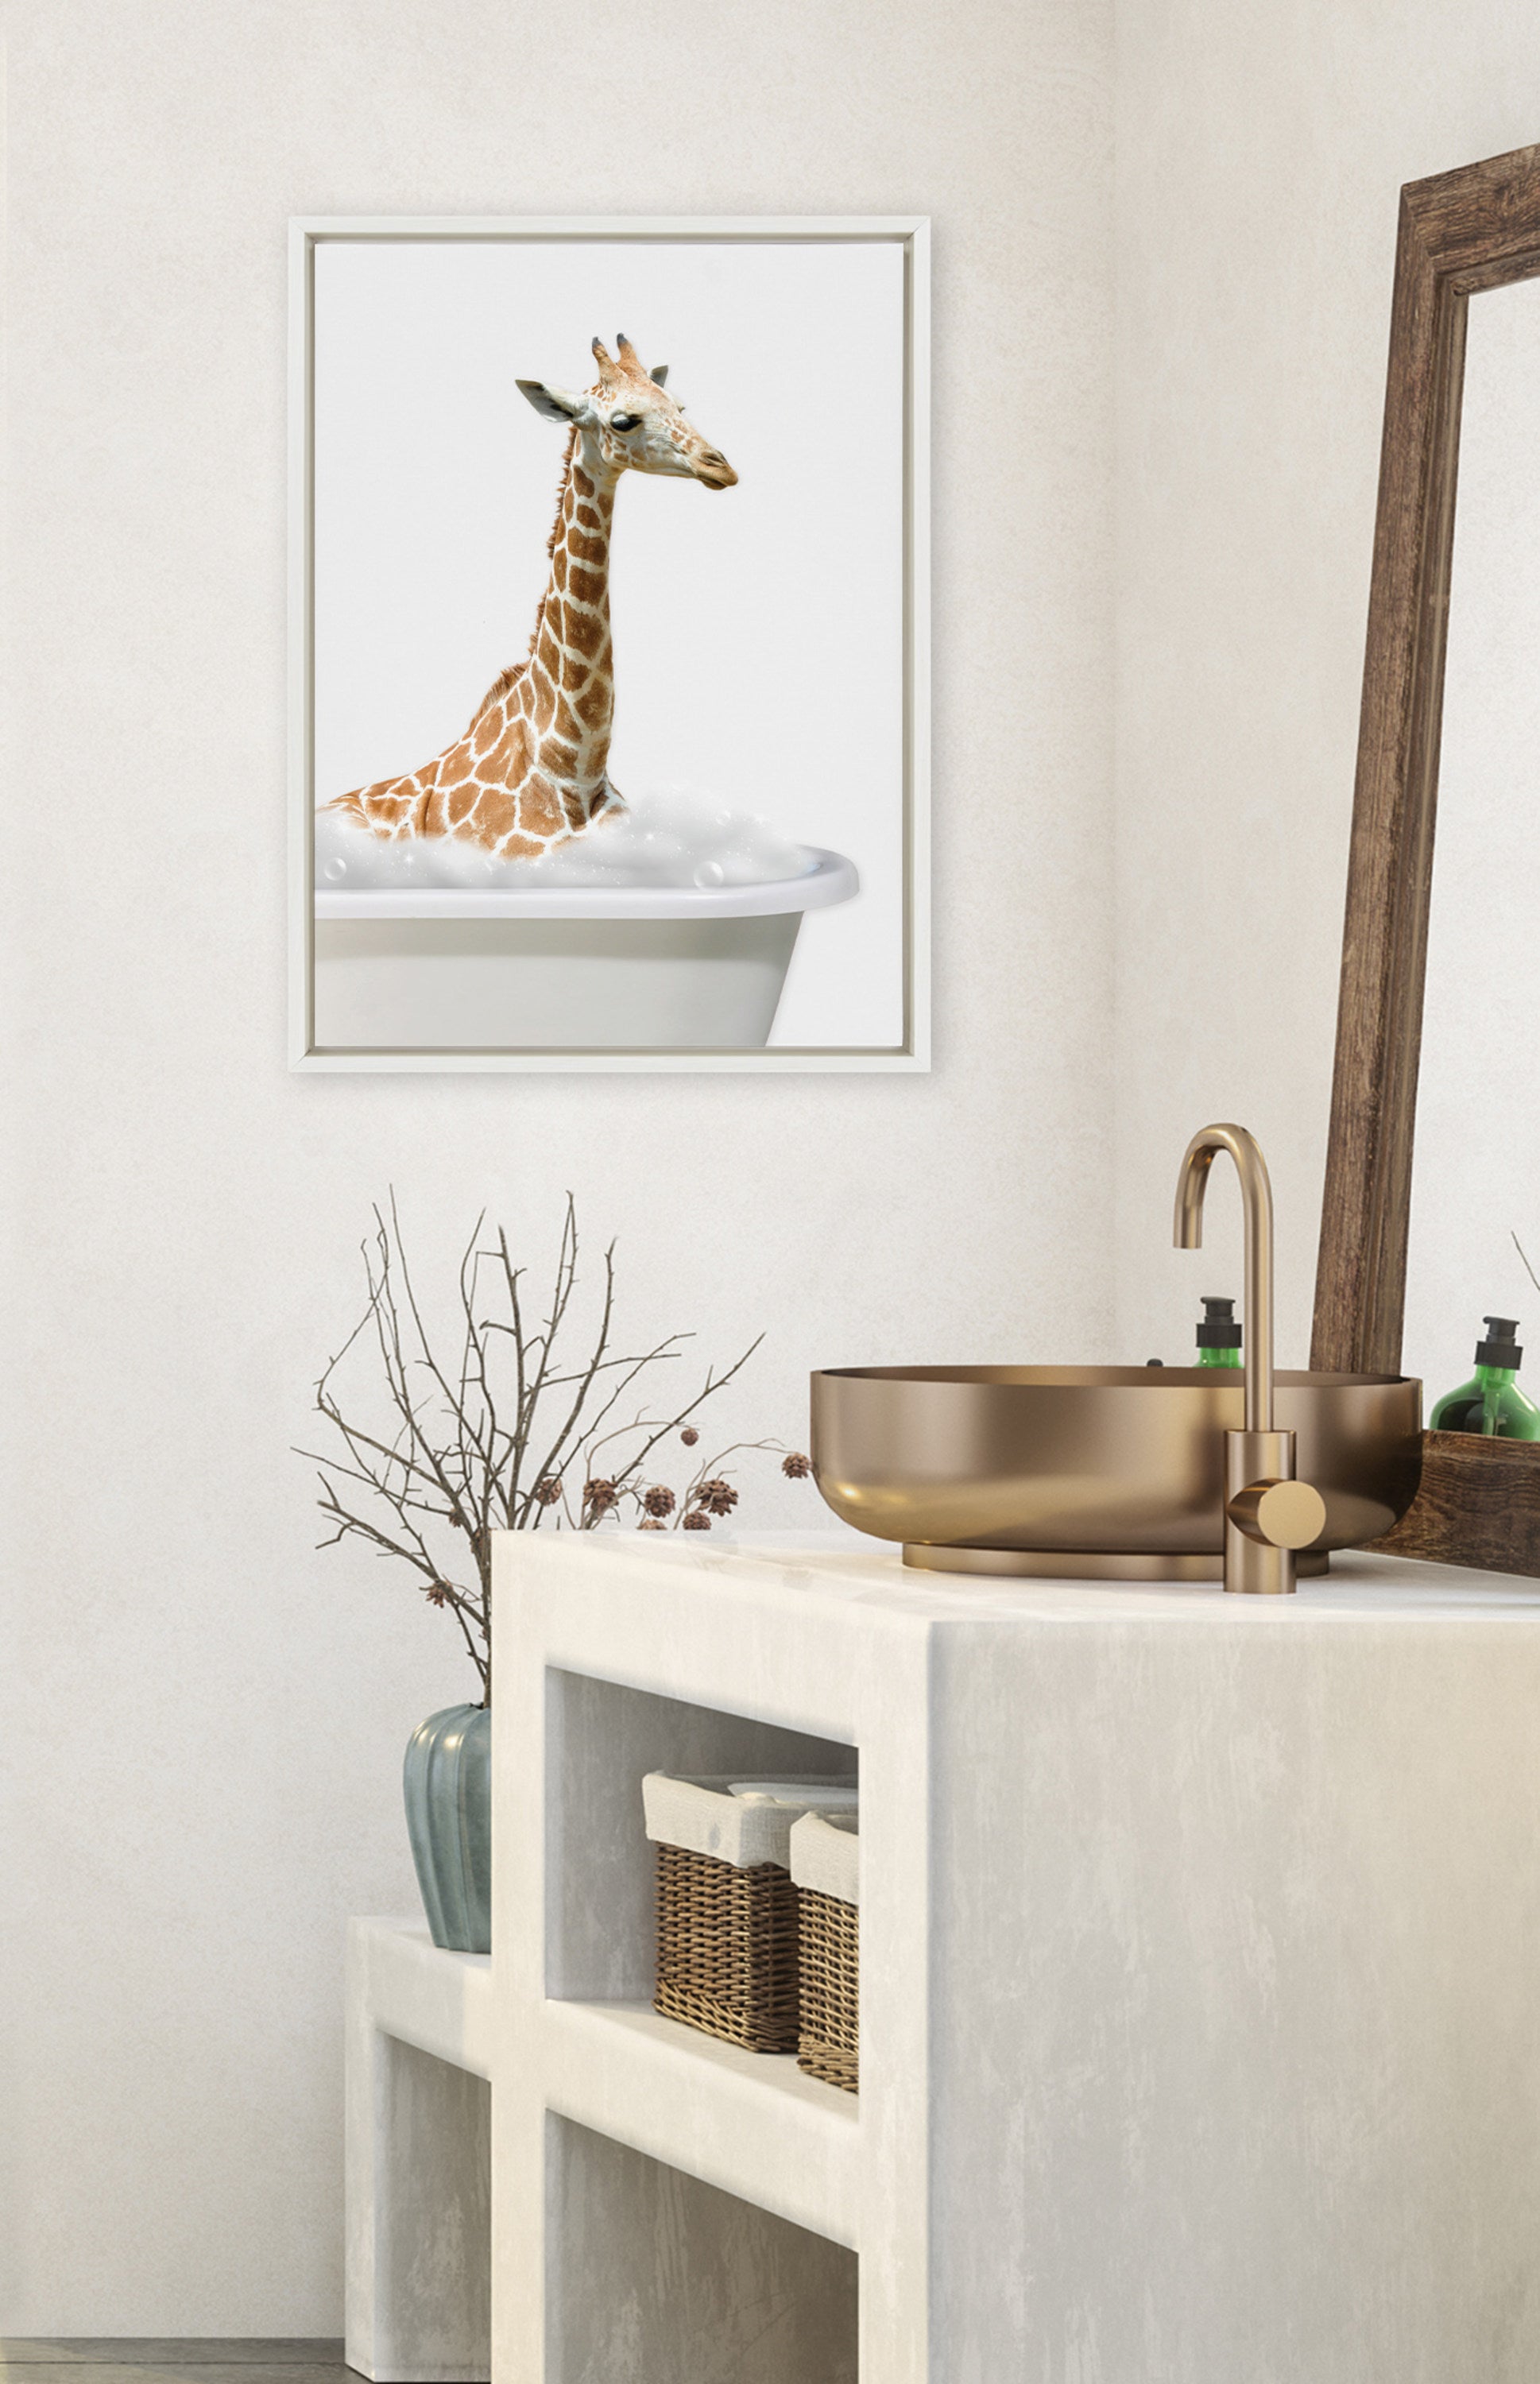 Sylvie Bathroom Bubble Bath Giraffe Framed Canvas by The Creative Bunch Studio